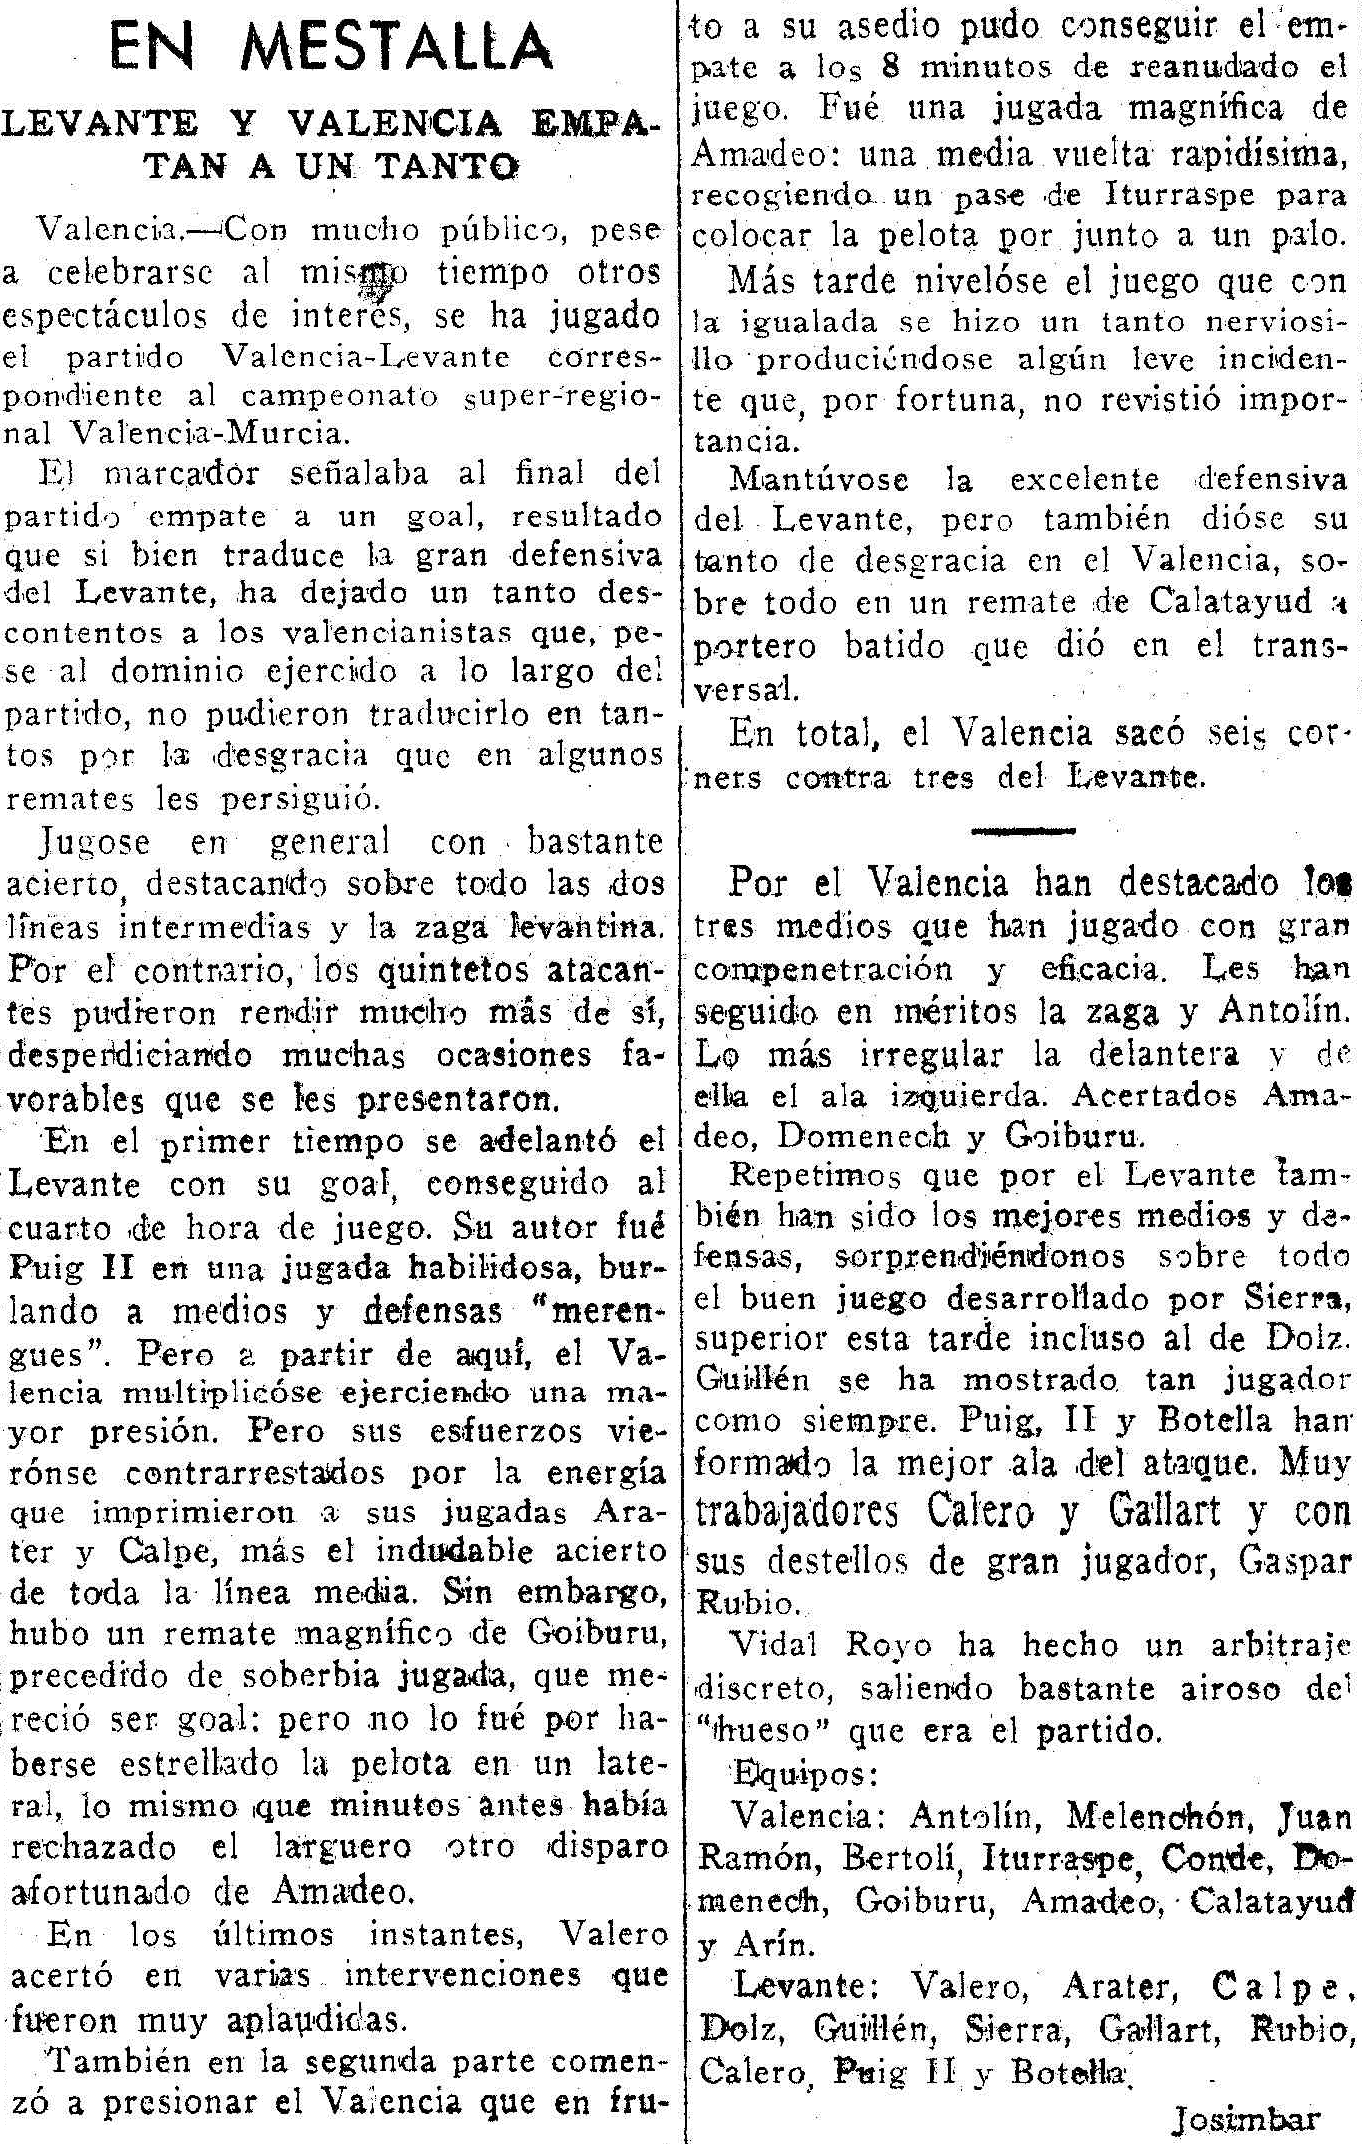 1936.10.25 (25 октября 1936), Валенсия - Леванте, 1-1.png